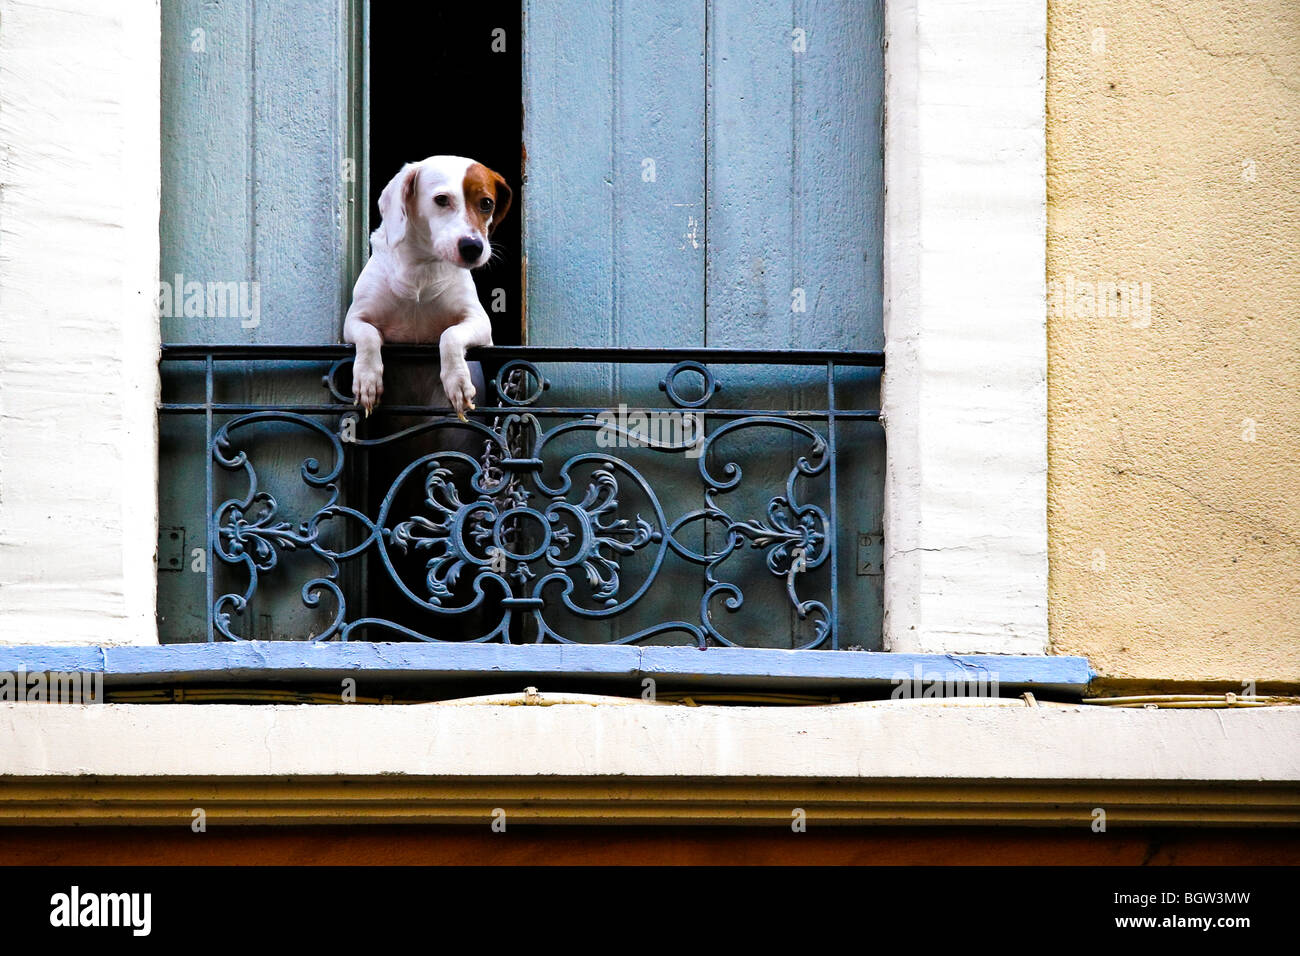 Un mignon petit chien français s'appuie sur des volets ouverts Banque D'Images